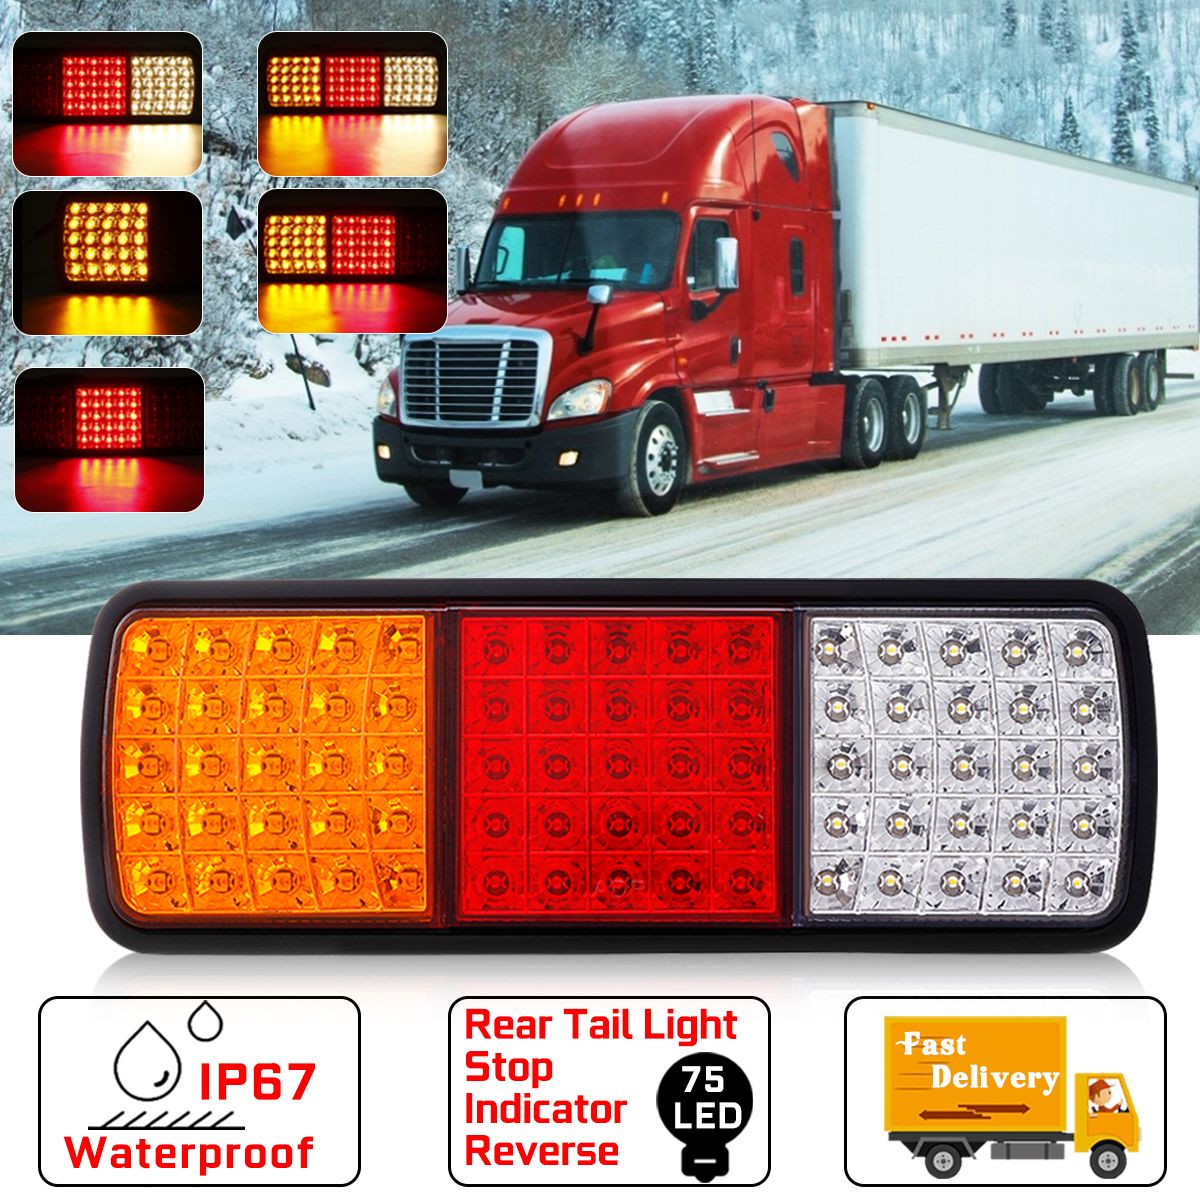 12V-75-LED-Rear-Tail-Lights-Brake-Reverse-Lamp-RedYellowWhite-Waterproof-For-Truck-Ute-Boat-Trailer-1616987